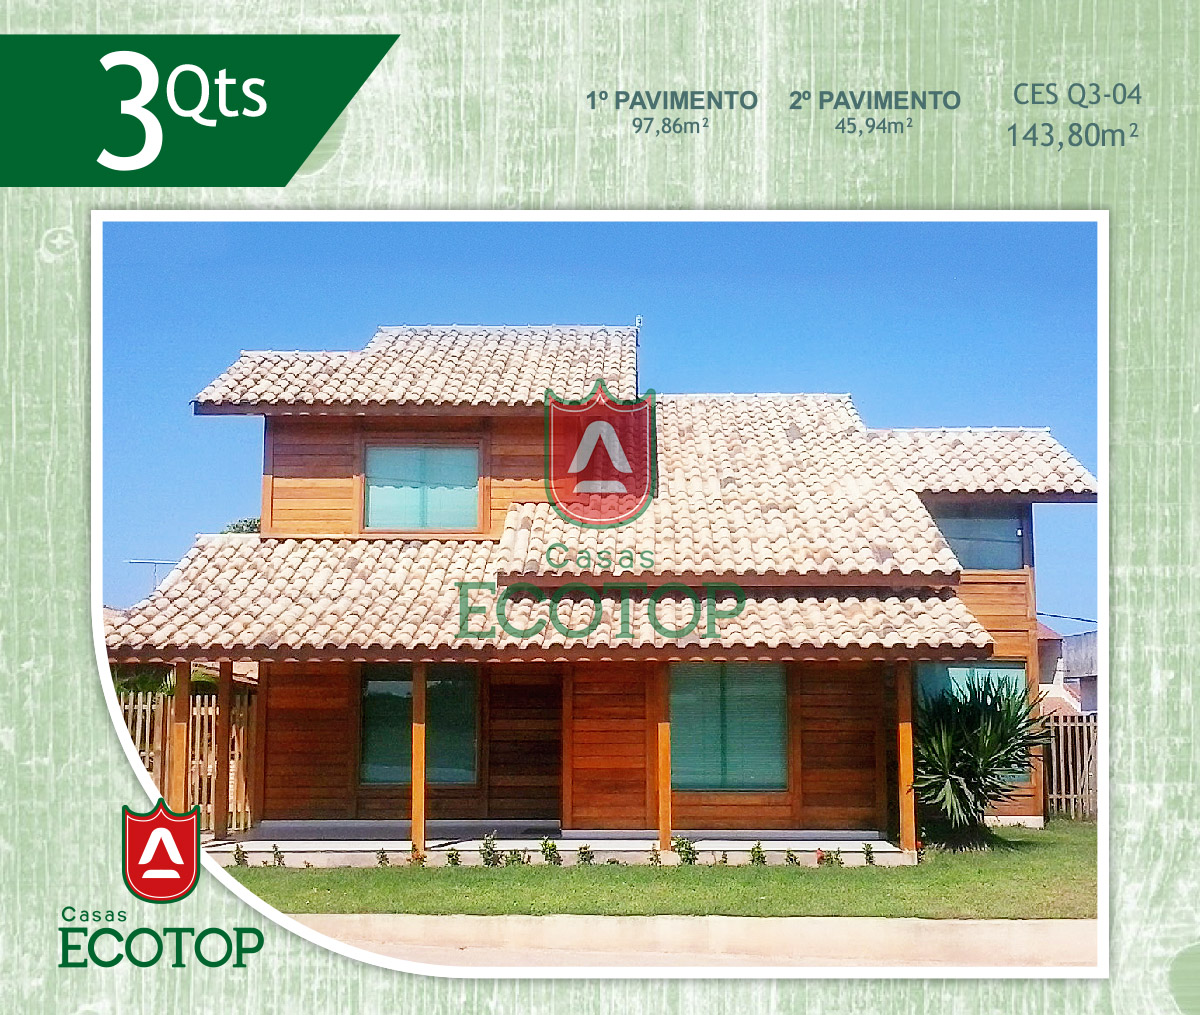 ces-04-fachada-casas-de-madeira-ecotop.cdr